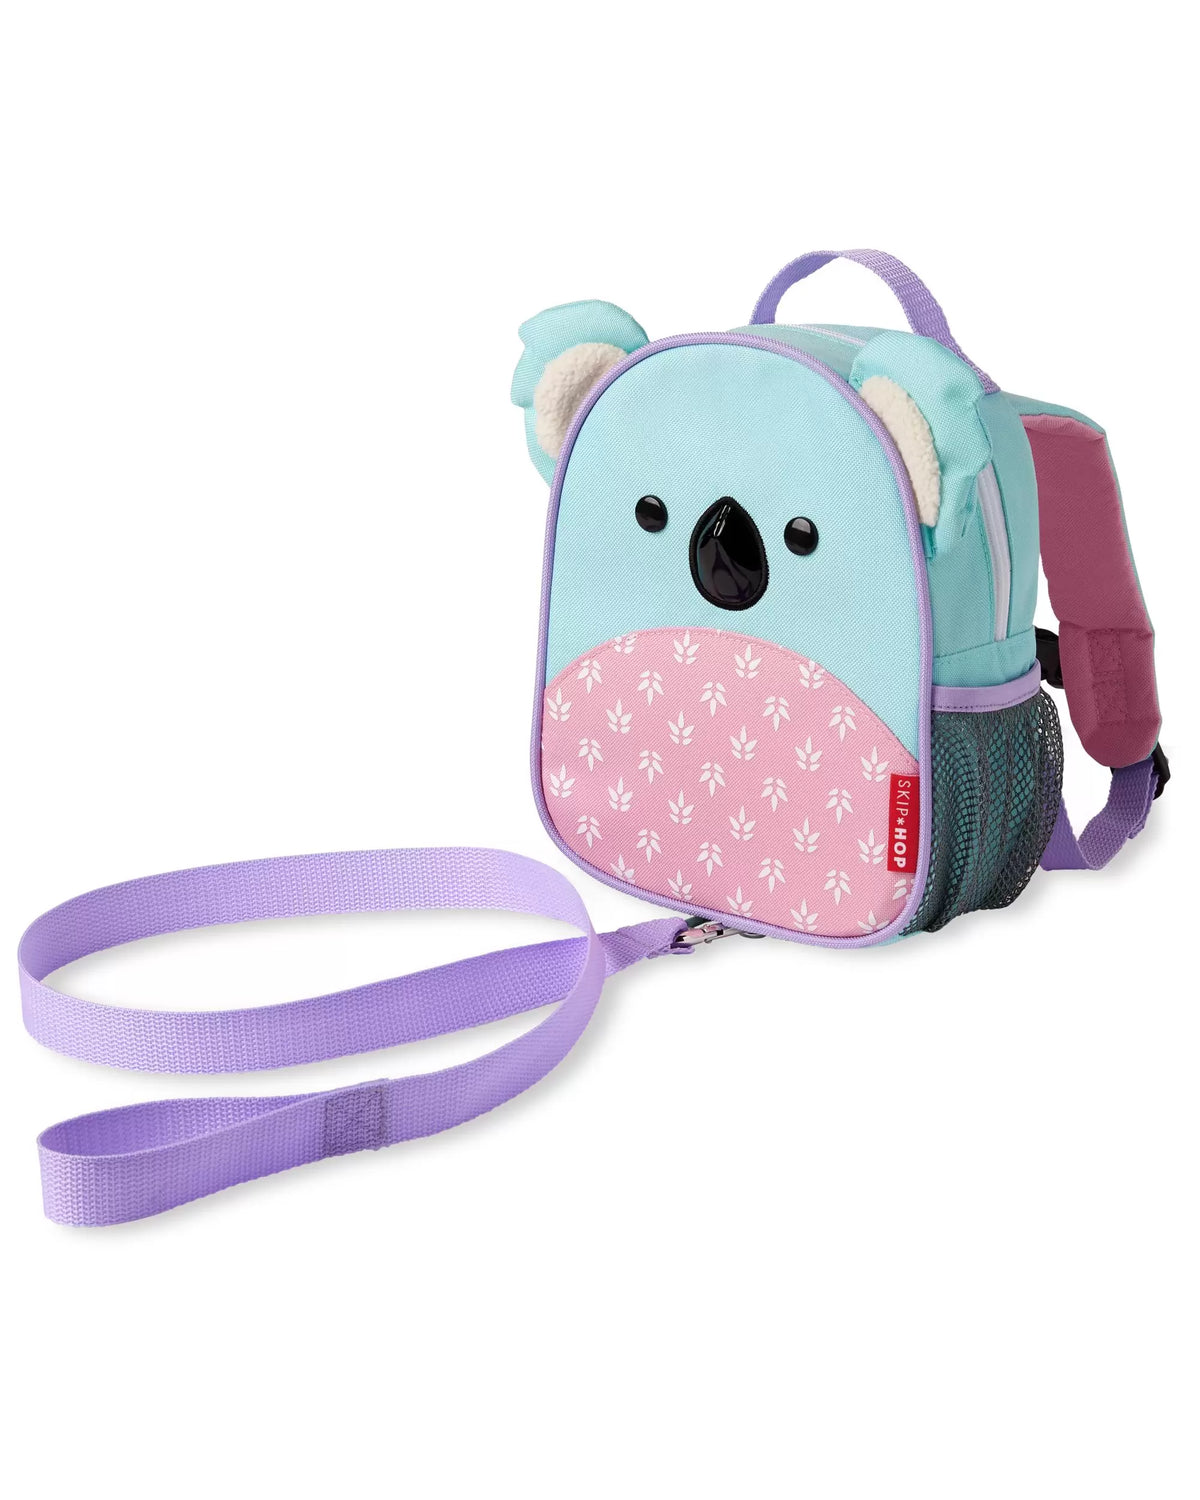 Skip Hop Zoo Mini Backpack with Reins - Koala - My Little Korner